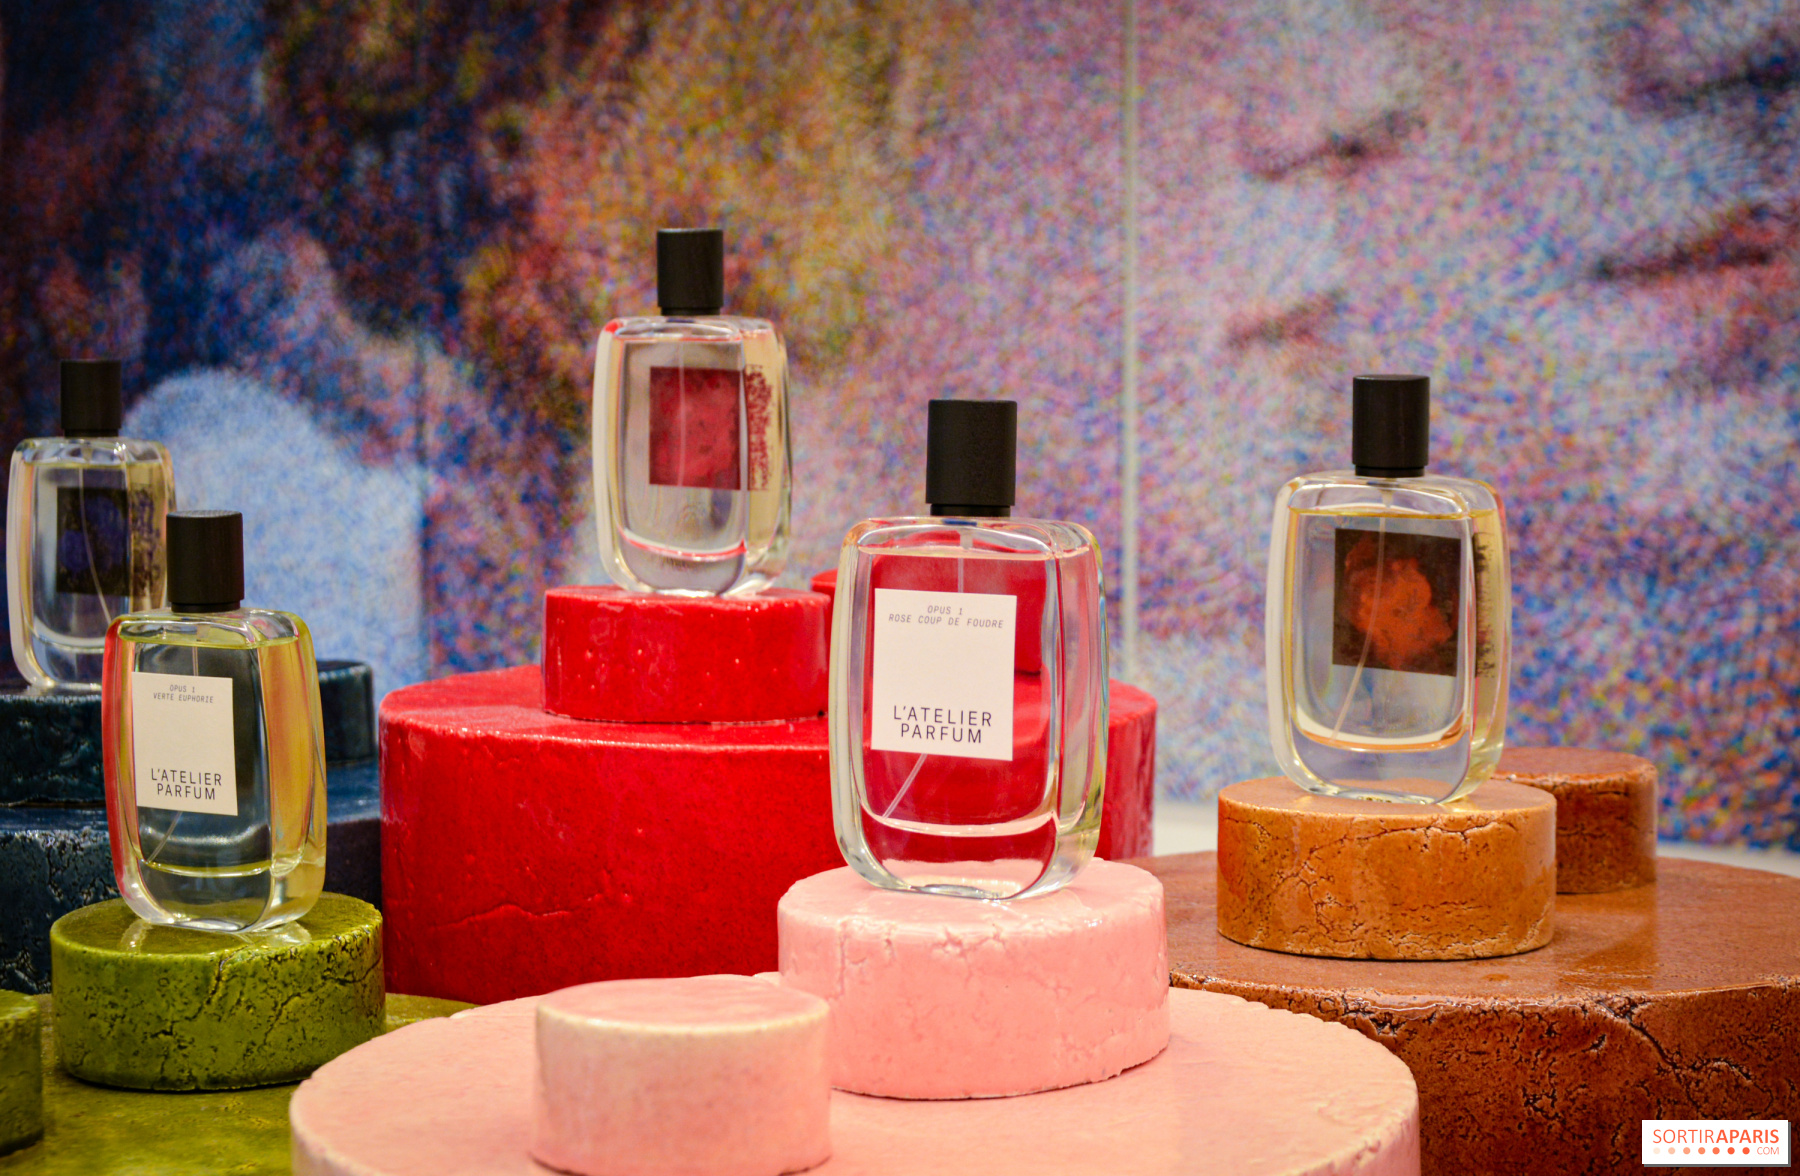 Les Meilleurs Parfums De Paris 5 Miniature Minis Perfume Bottles in Box Set